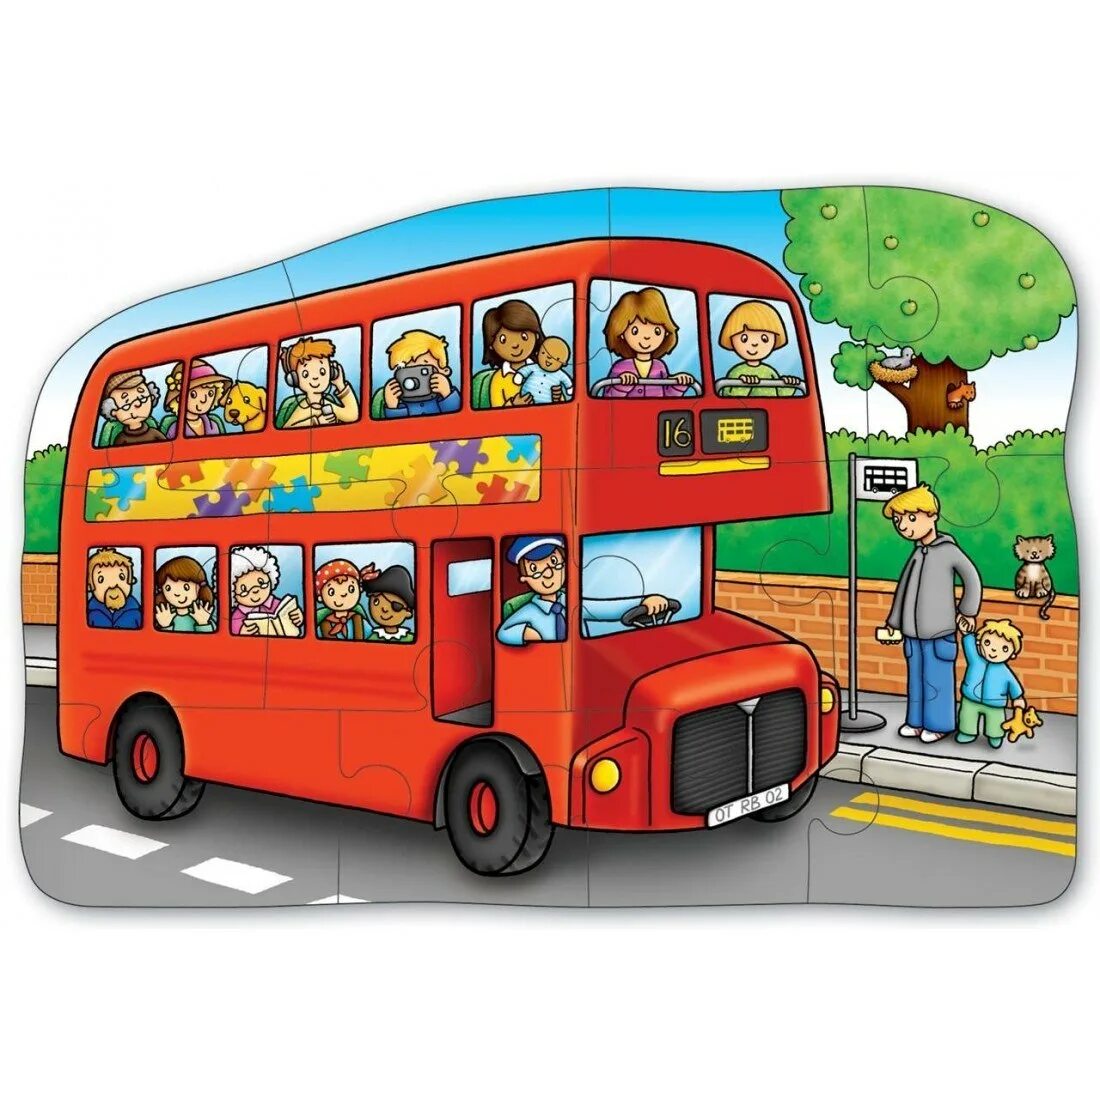 Детский автобус для детей. Автобус для детей. Автобус для детского сада. Изображение автобуса для детей. Автобус картинка для детей.